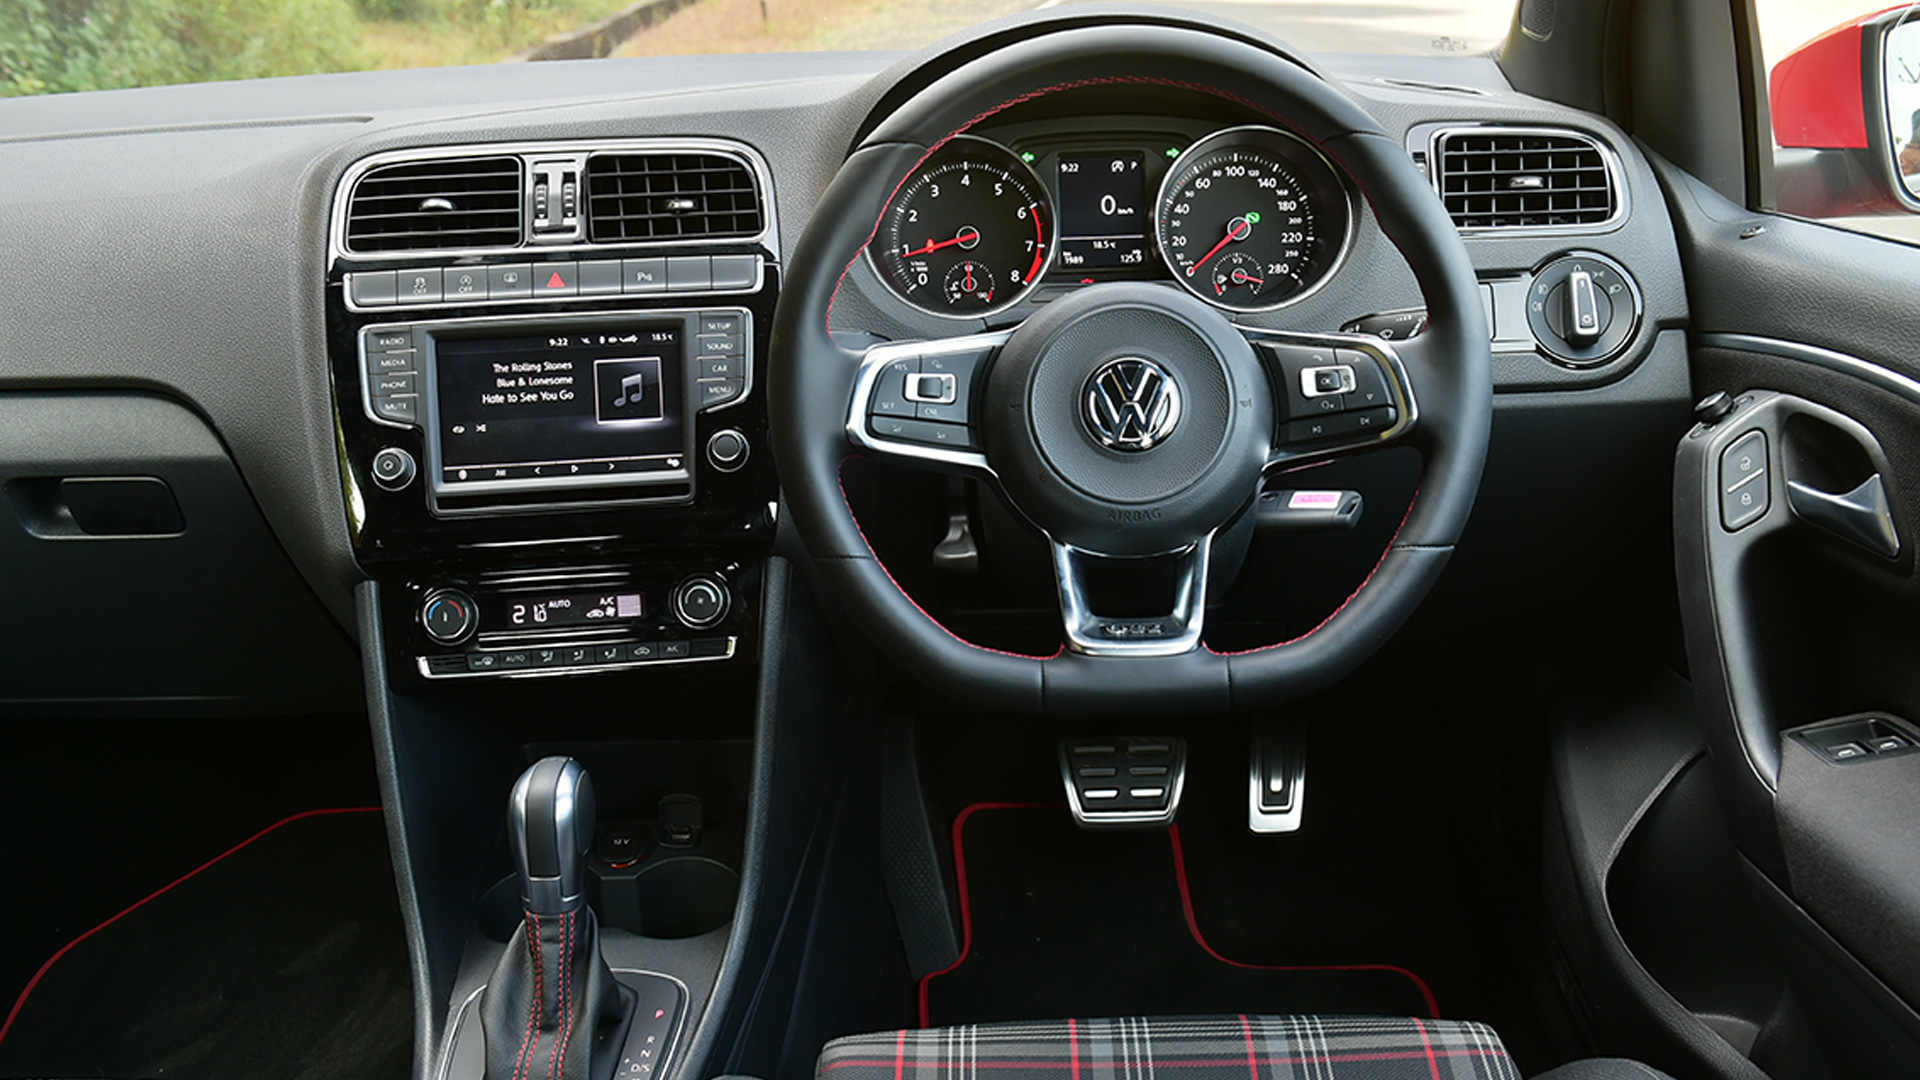 Volkswagen Polo 2017 GTI Interior Car Photos - Overdrive